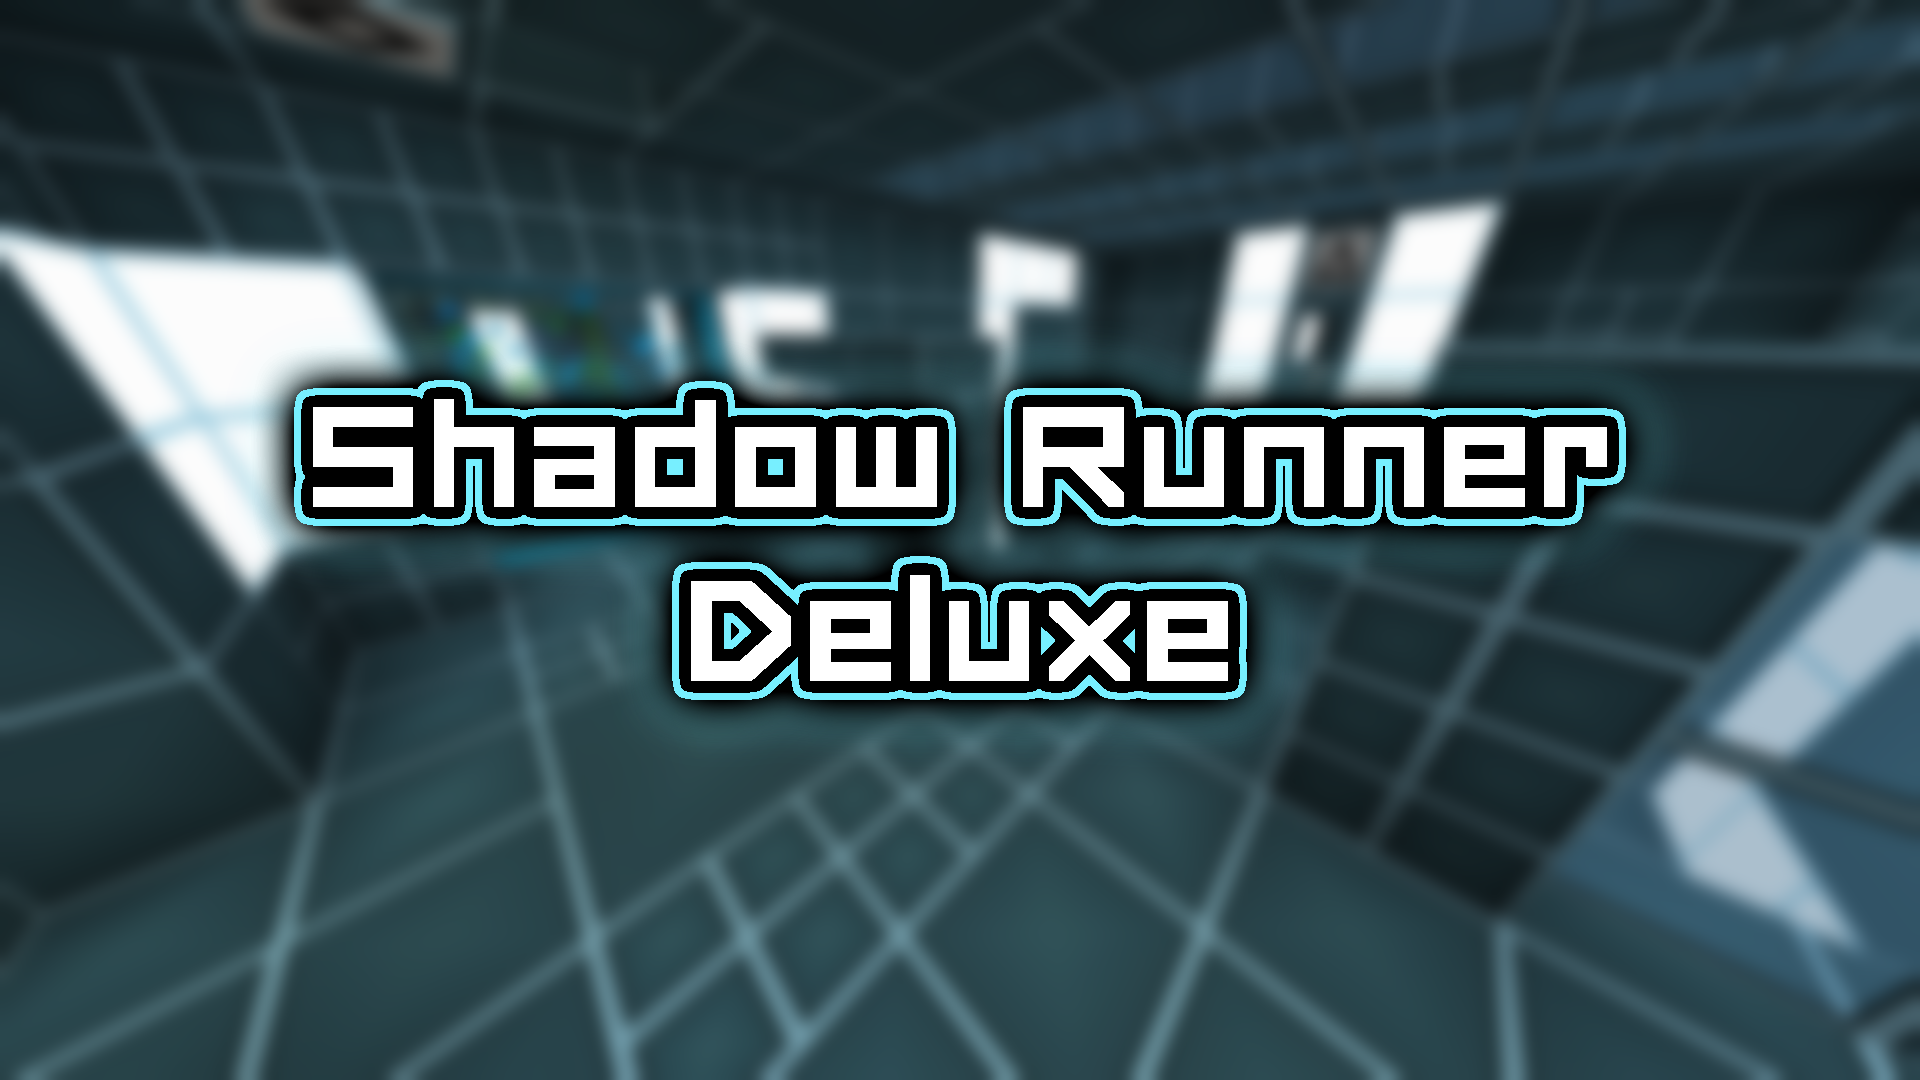 Herunterladen Shadow Runner Deluxe zum Minecraft 1.14.4